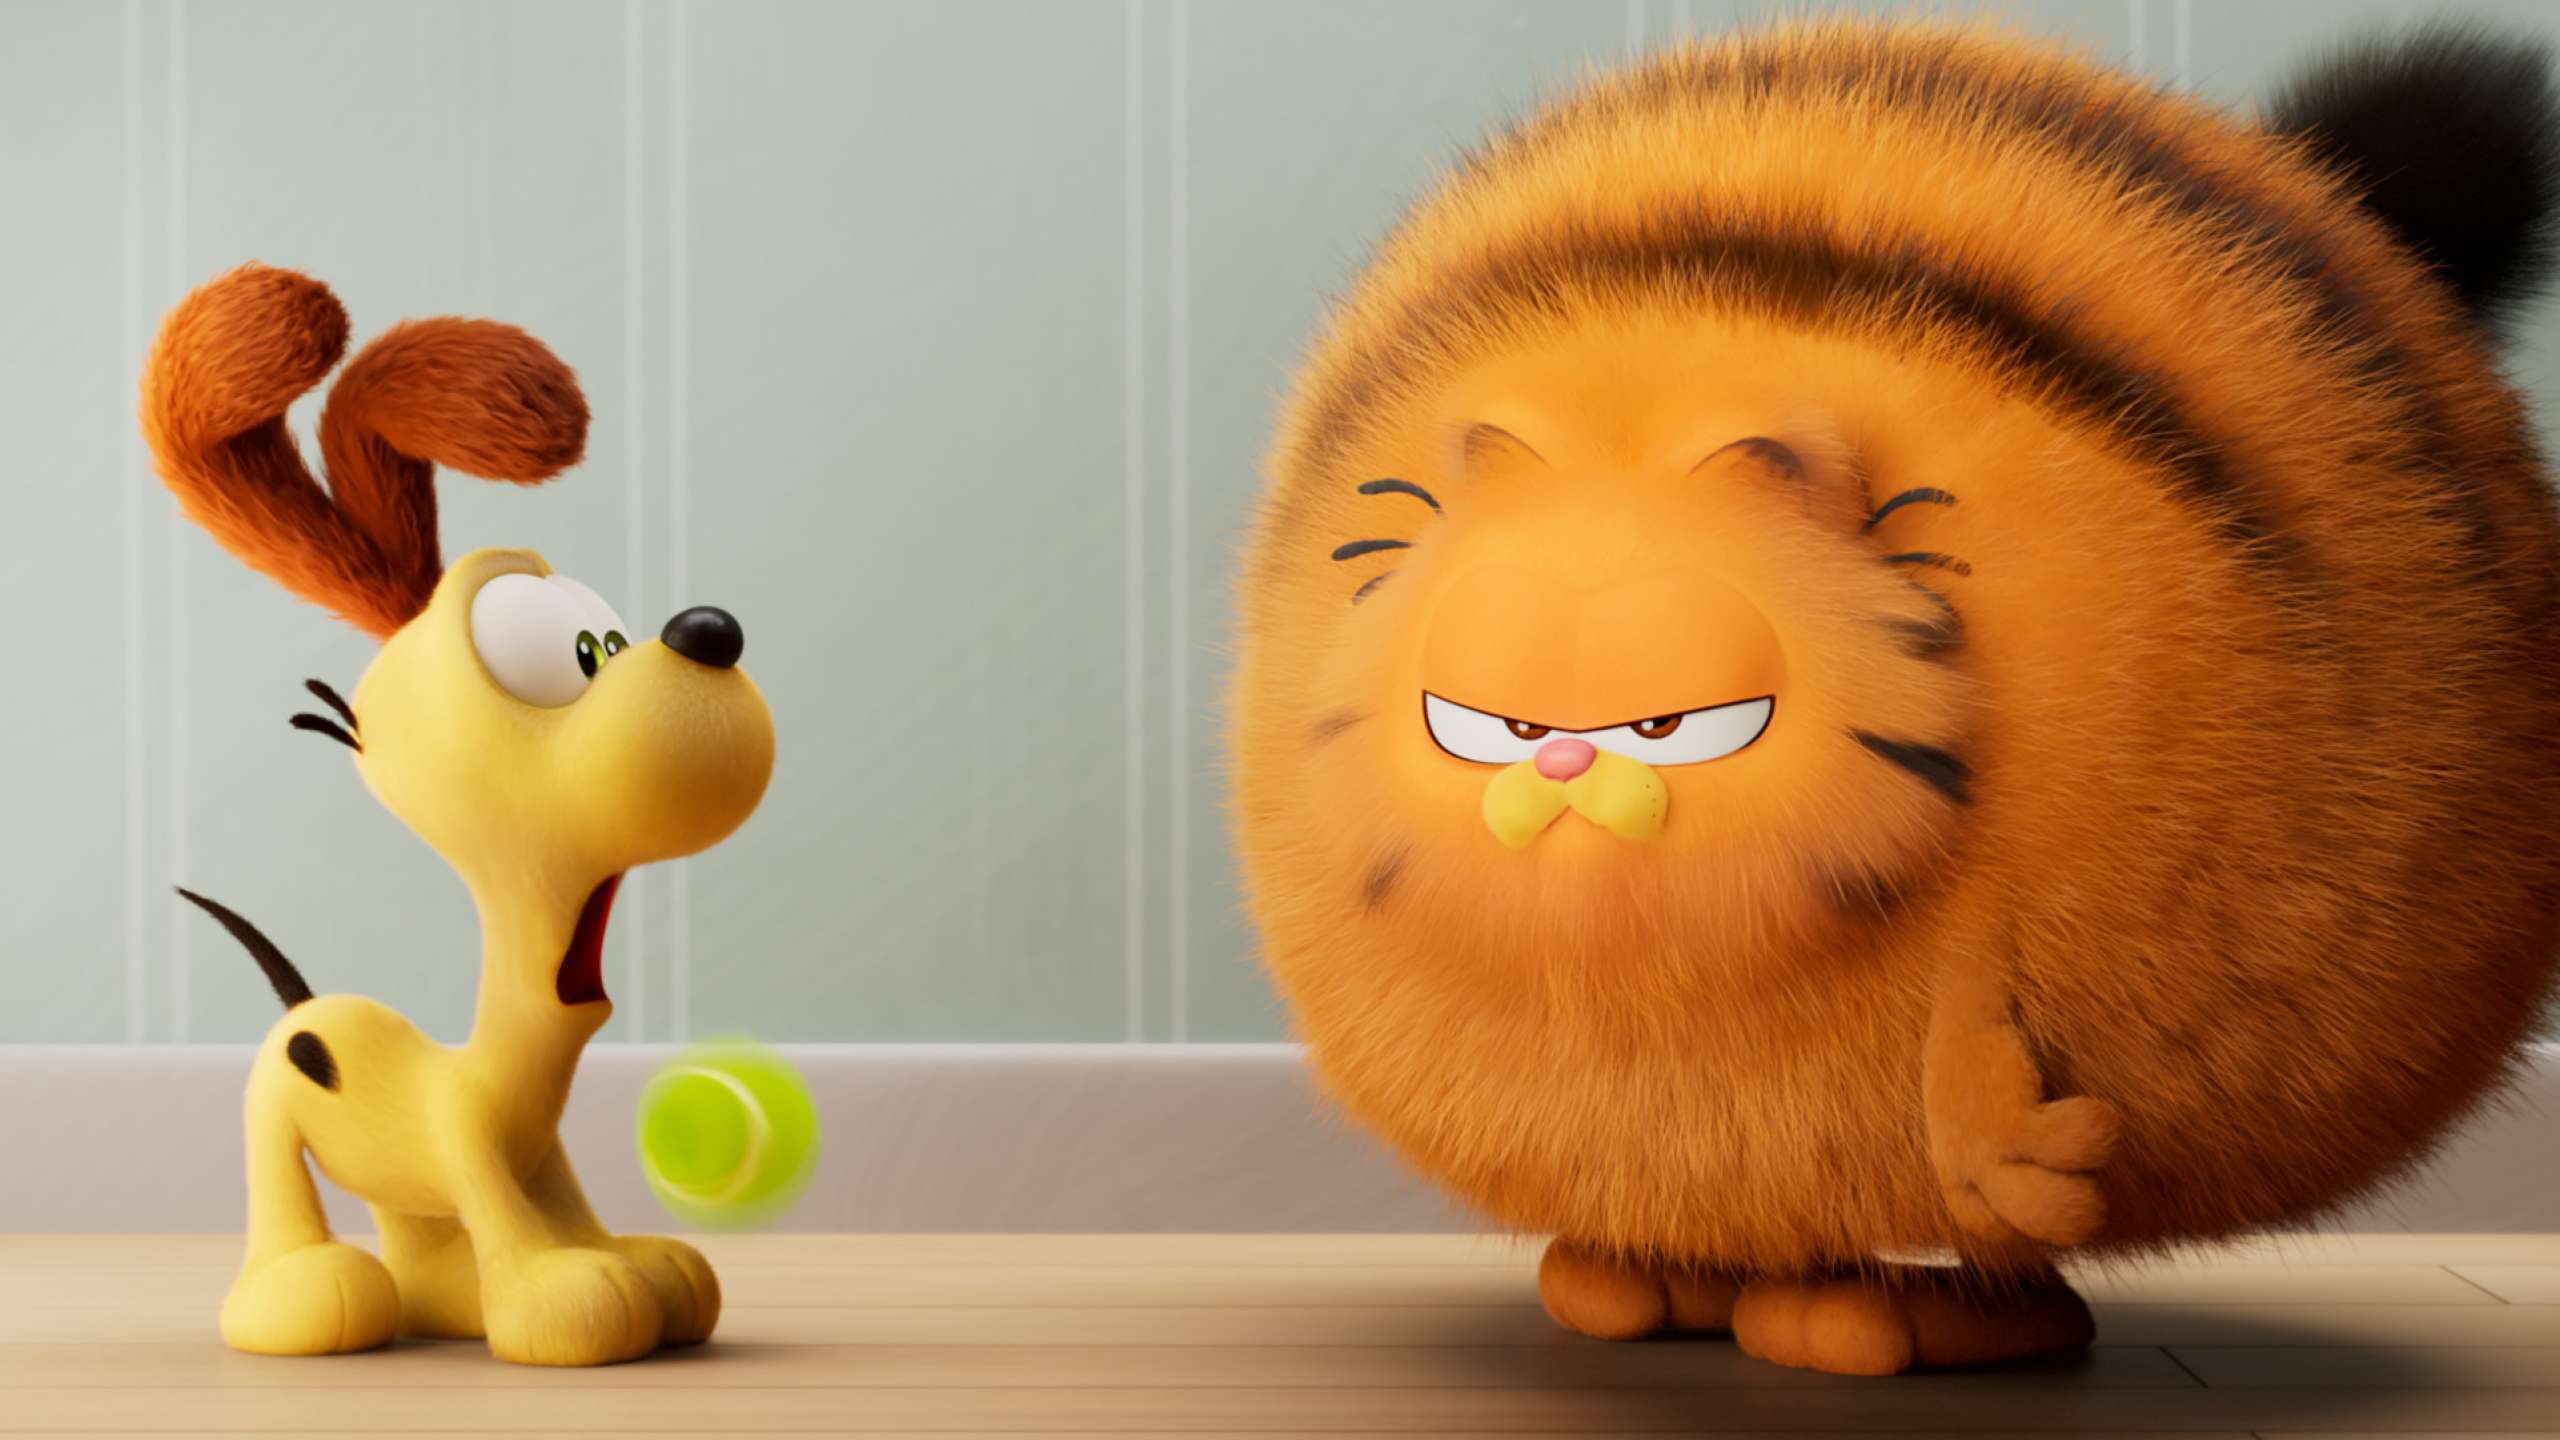 Garfield Eine Extra Portion Abenteuer (2024) Film, Trailer, Kritik